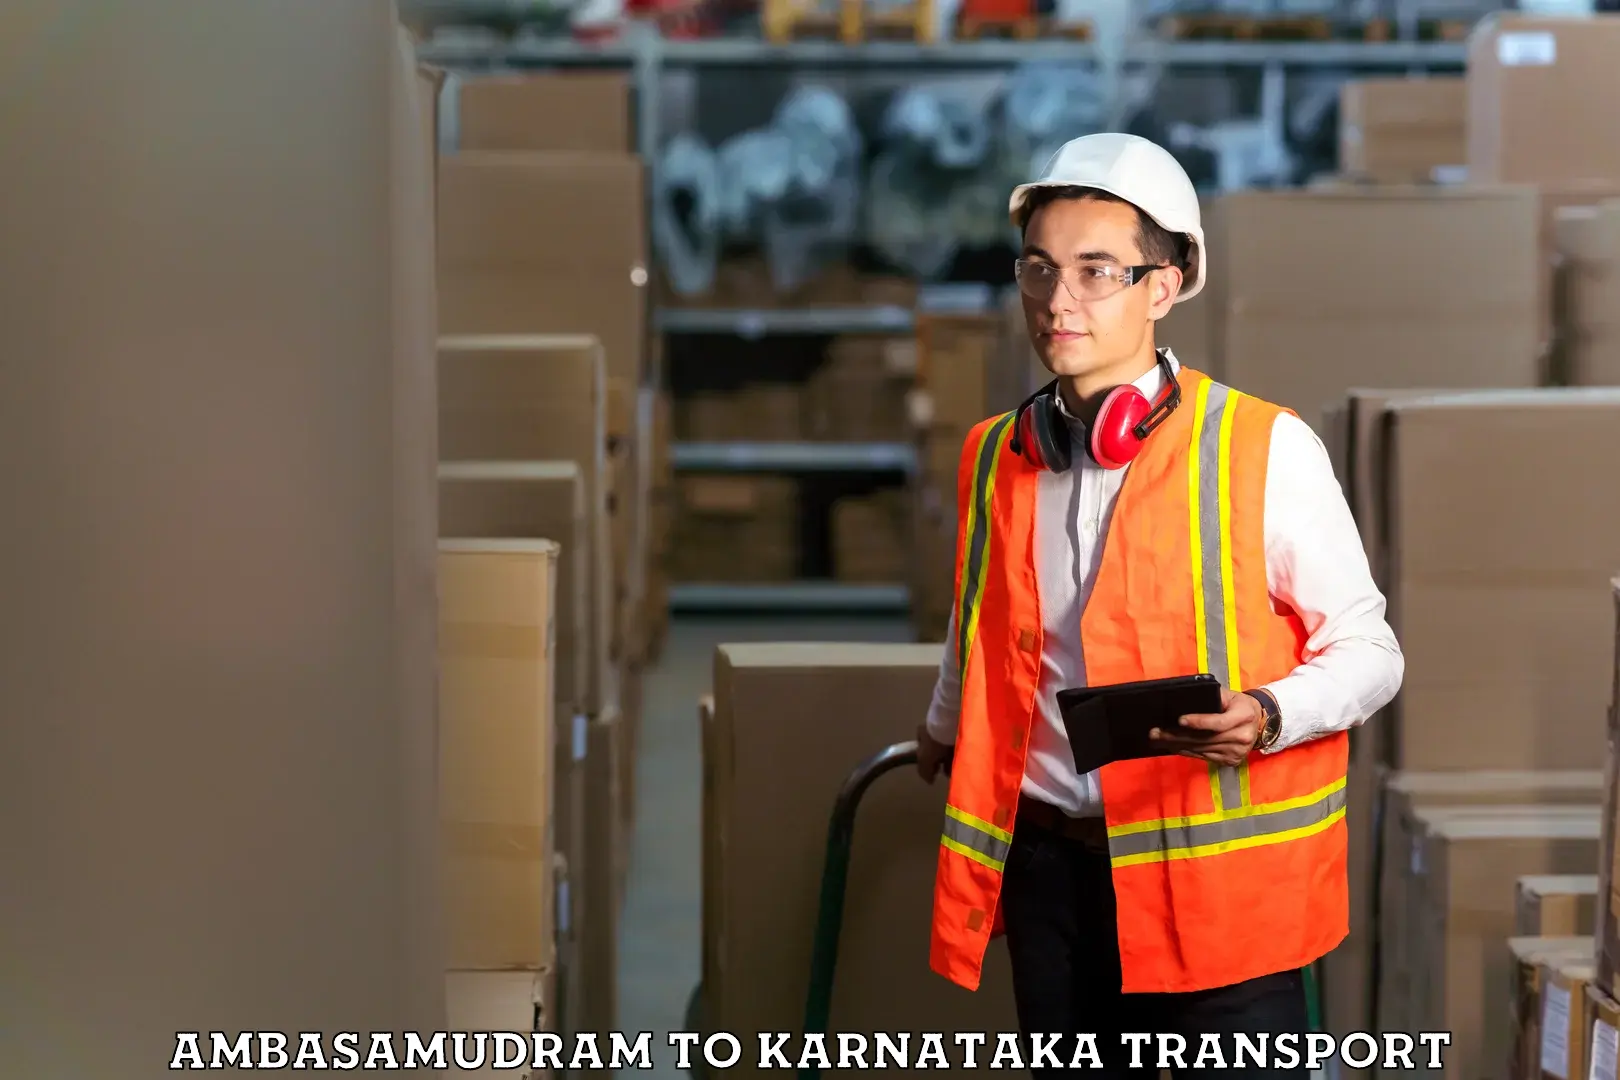 Cargo transport services in Ambasamudram to Karnataka